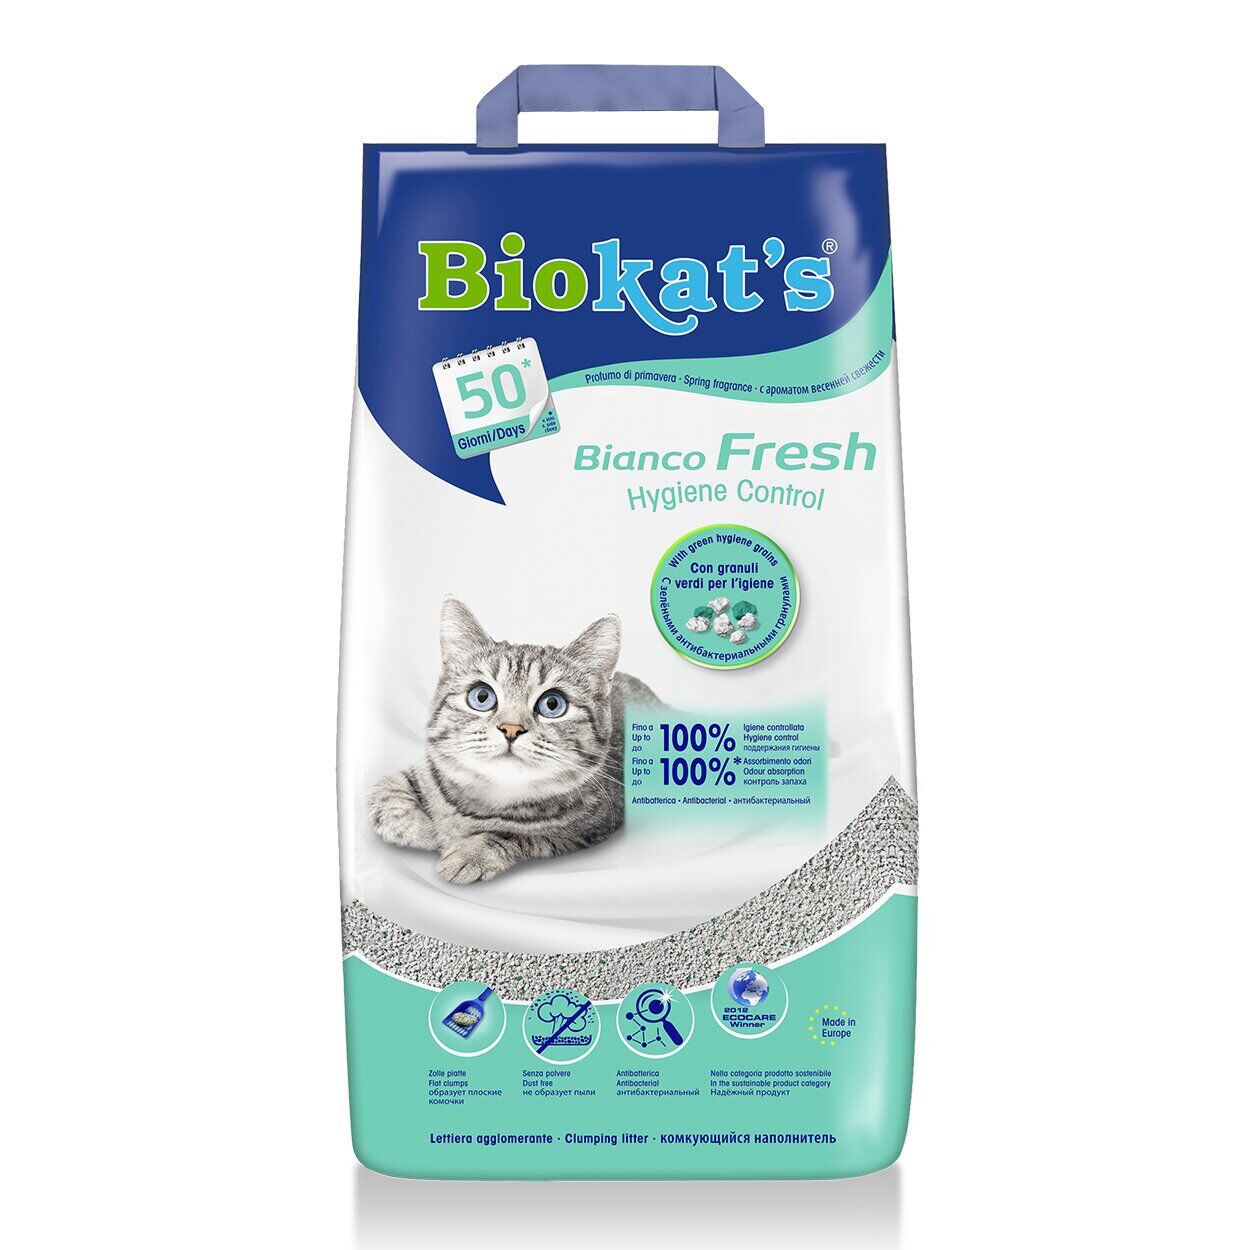 Наповнювач бентонітовий Biokats Bianco Fresh 5 кг